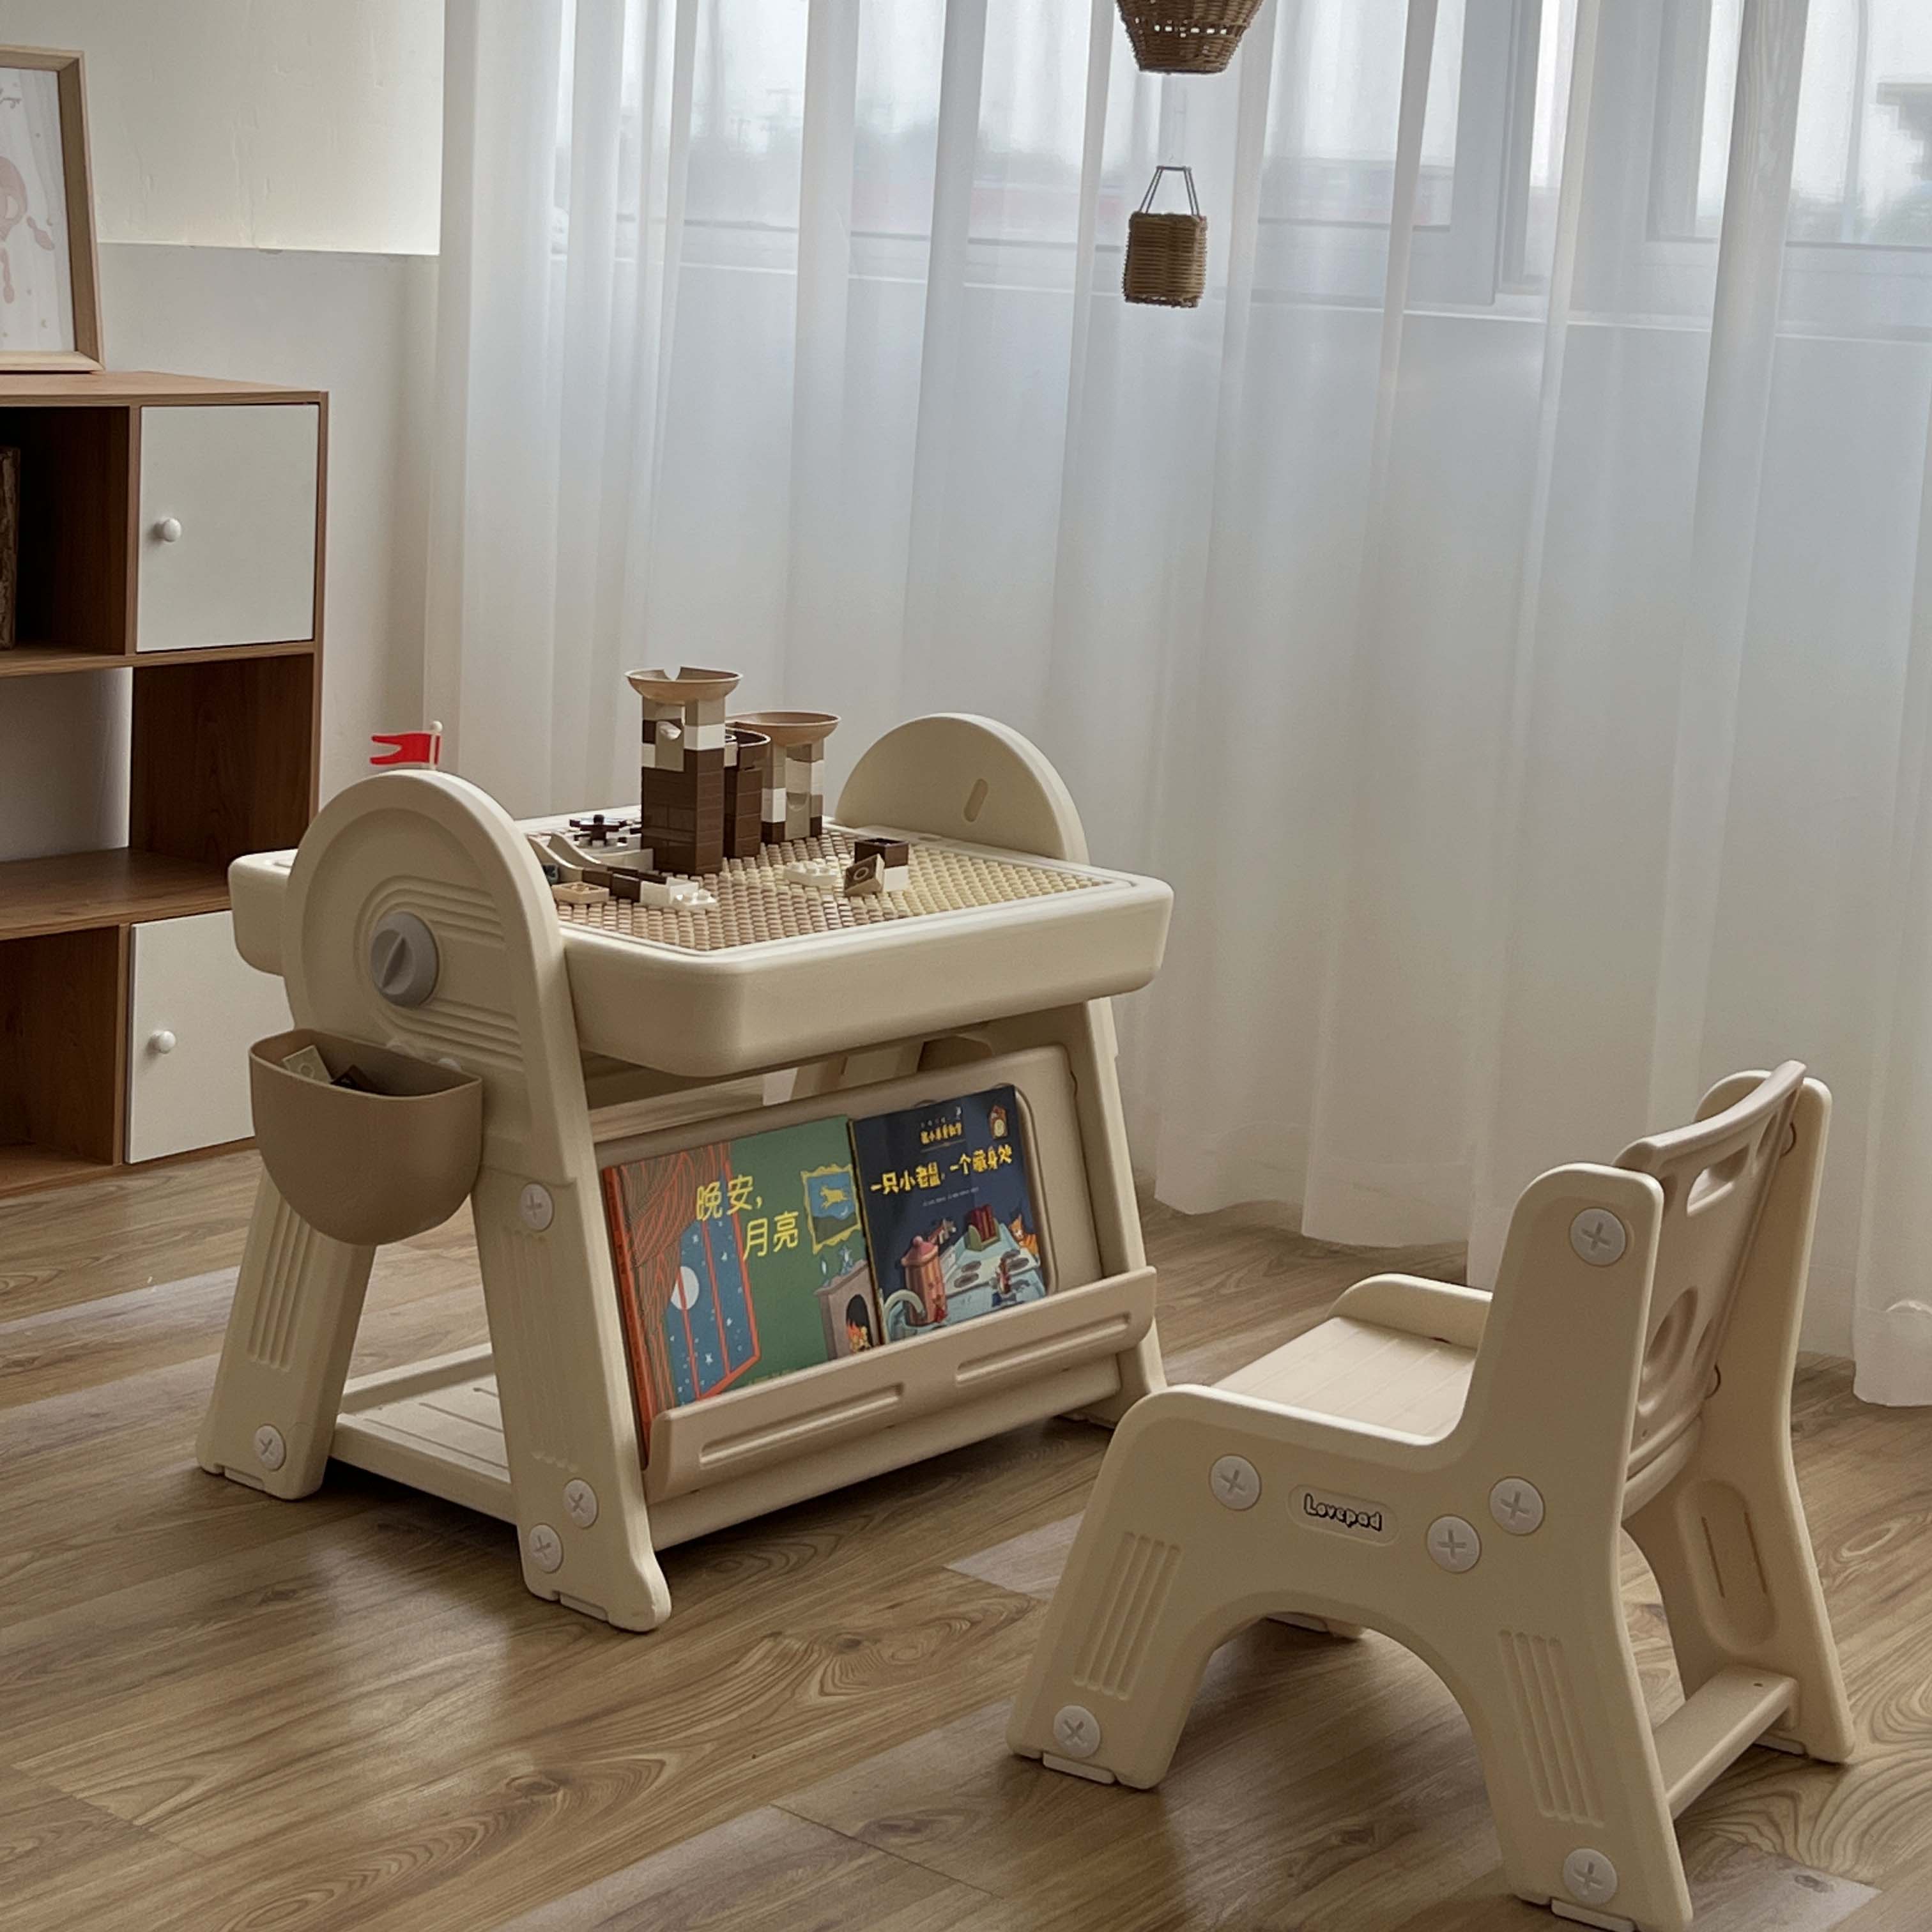 Lovepad多功能儿童积木桌子男孩女孩大颗粒益智游戏桌画板玩具桌